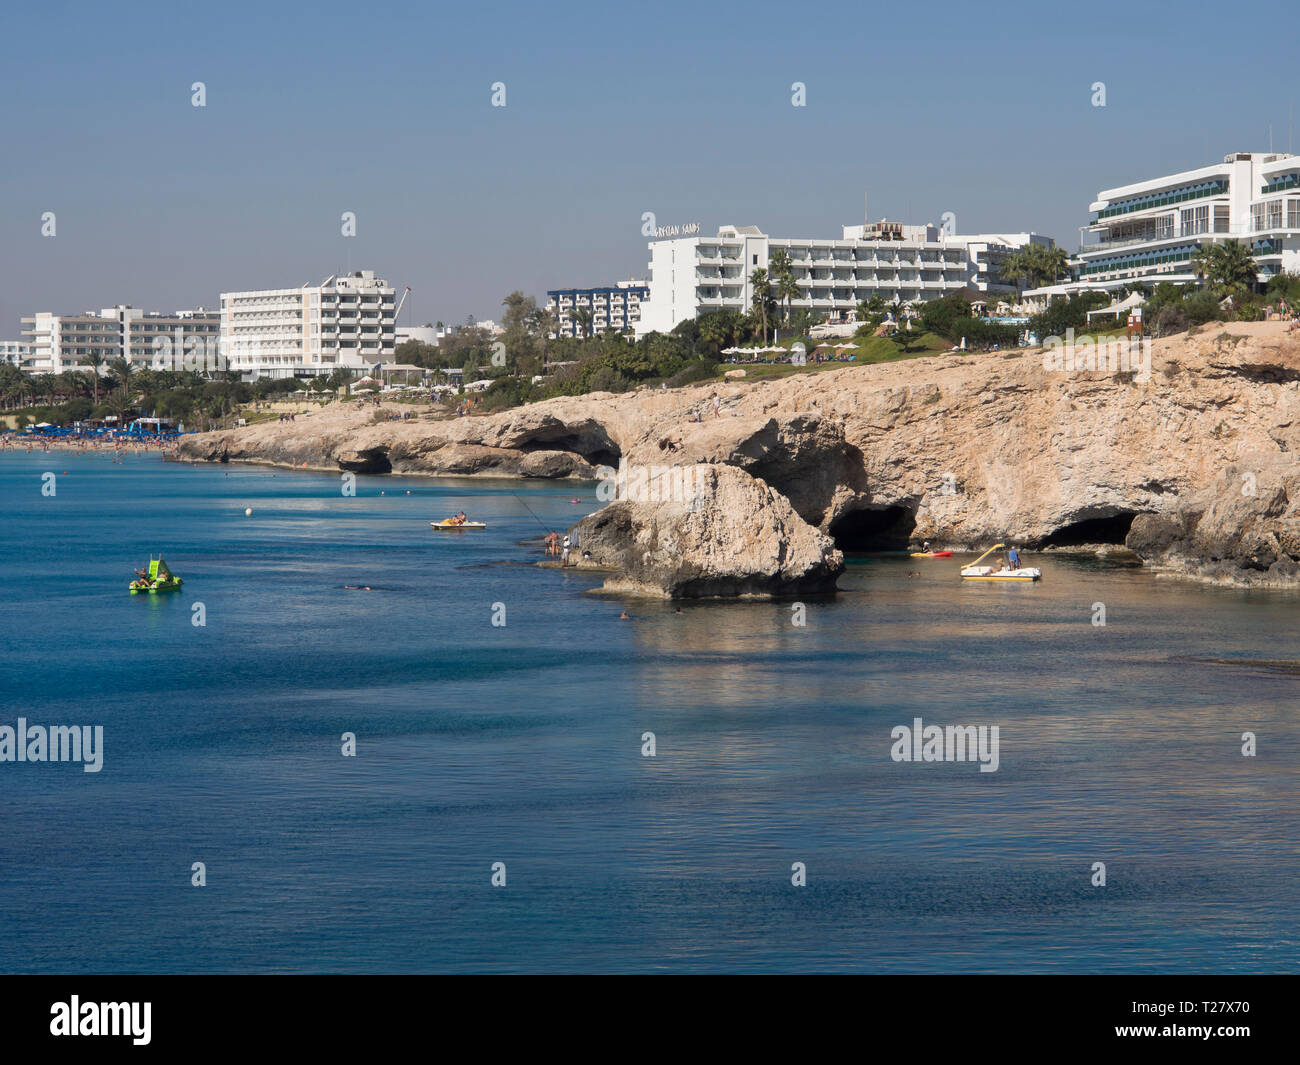 Sonne und Meer, Klippen und Strand, Touristen und Hotels die Essenz eines erfolgreichen Urlaub in Ayia Napa Zypern Stockfoto